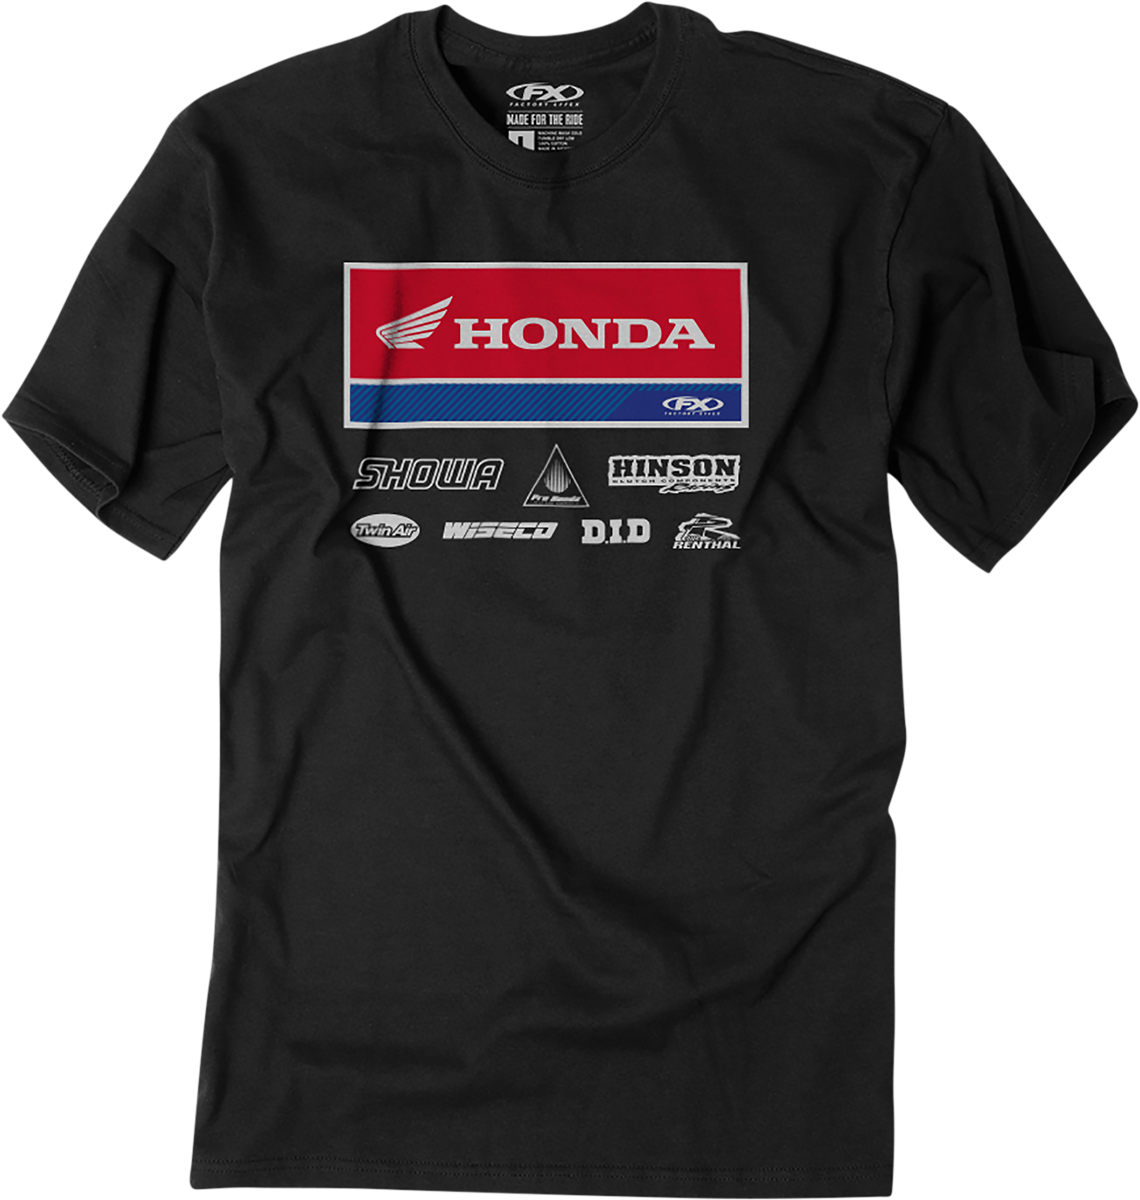 FACTORY EFFEX Honda 21 Racewear T-Shirt - Black - Medium 24-87322